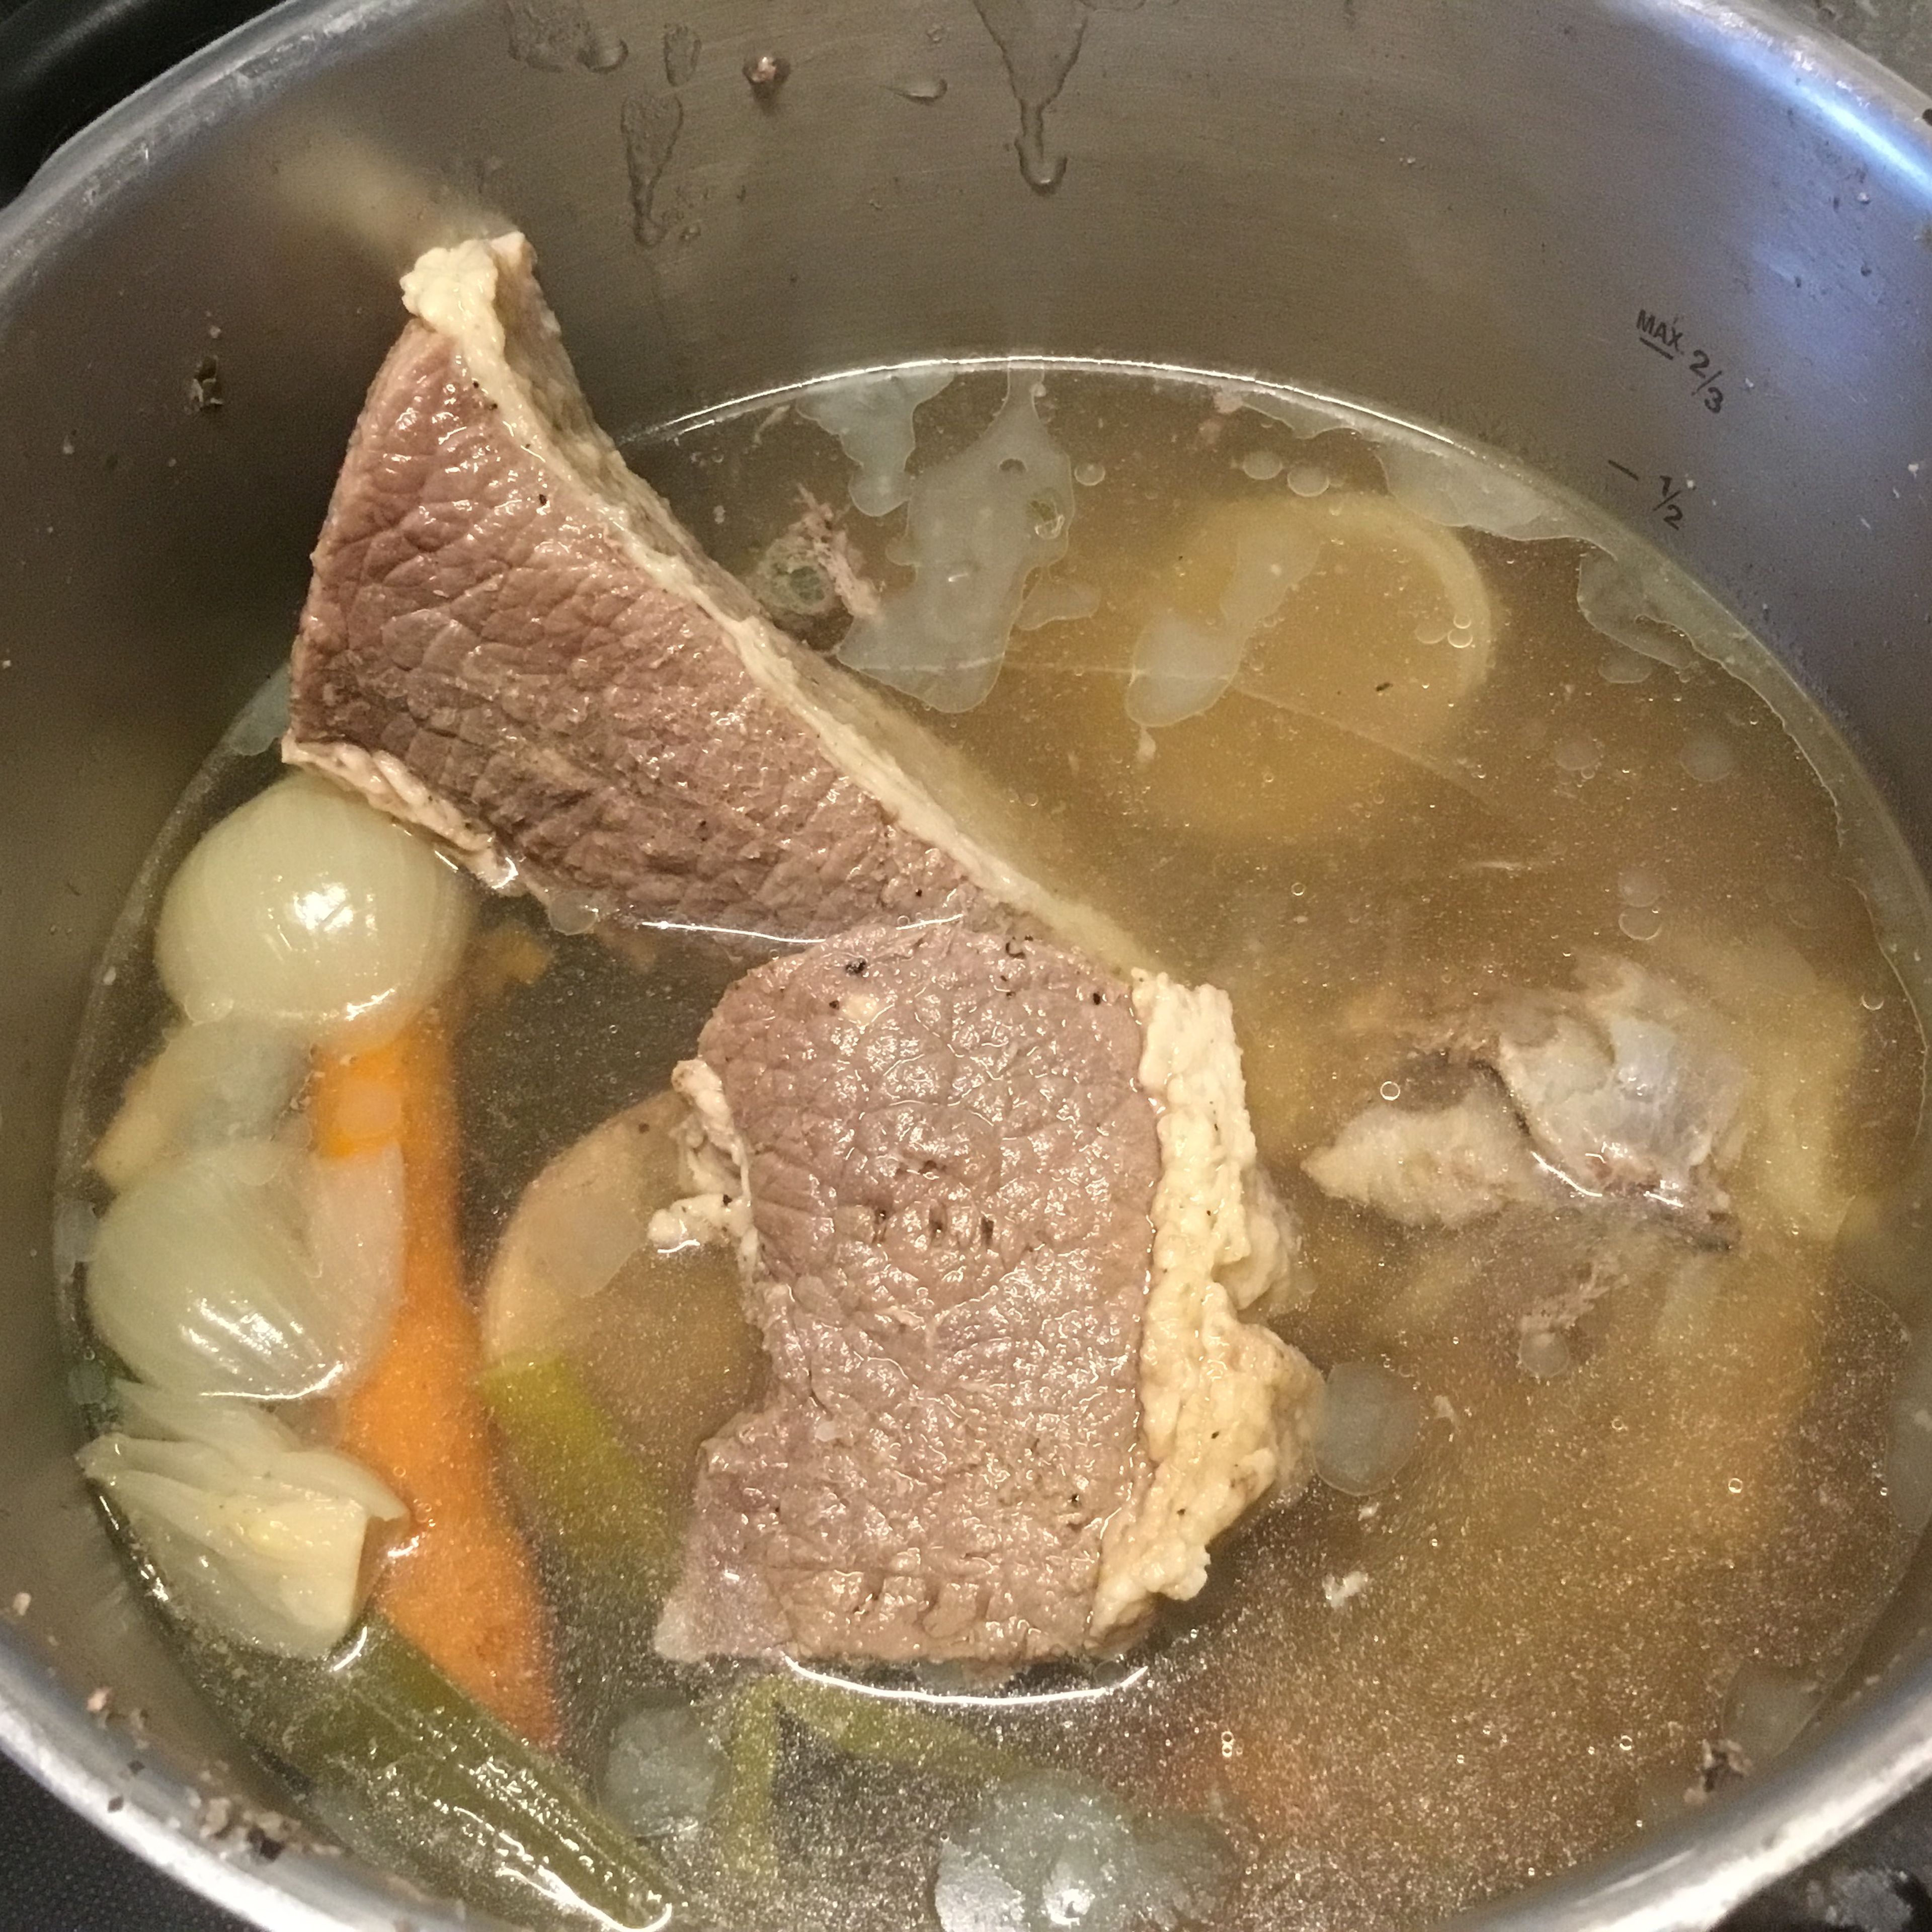 Das Suppenfleisch und wenn beabsichtigt ist, eine kräftige Rindssuppe zu machen, 2-3 Markknochen in 3l Wasser aufstellen. 1/2 Zwiebel mit Schale, 1 Karotte geputzt, 1/2 Lauch, kleines Stück Sellerie, 2 Zweige Petersilie als Suppengemüse hinzufügen. Salz und Pfeffer nach Geschmack . Ich koche ein schönes Stück Siedefleisch/Suppe meist im Schnellkochtopf. Hier reichen mir 20-22 Minuten. Ansonsten ca. 45-70 Min. je nach Rindfleischart kochen. Ich mag das gekochte RF eher fest, nicht zu weich.